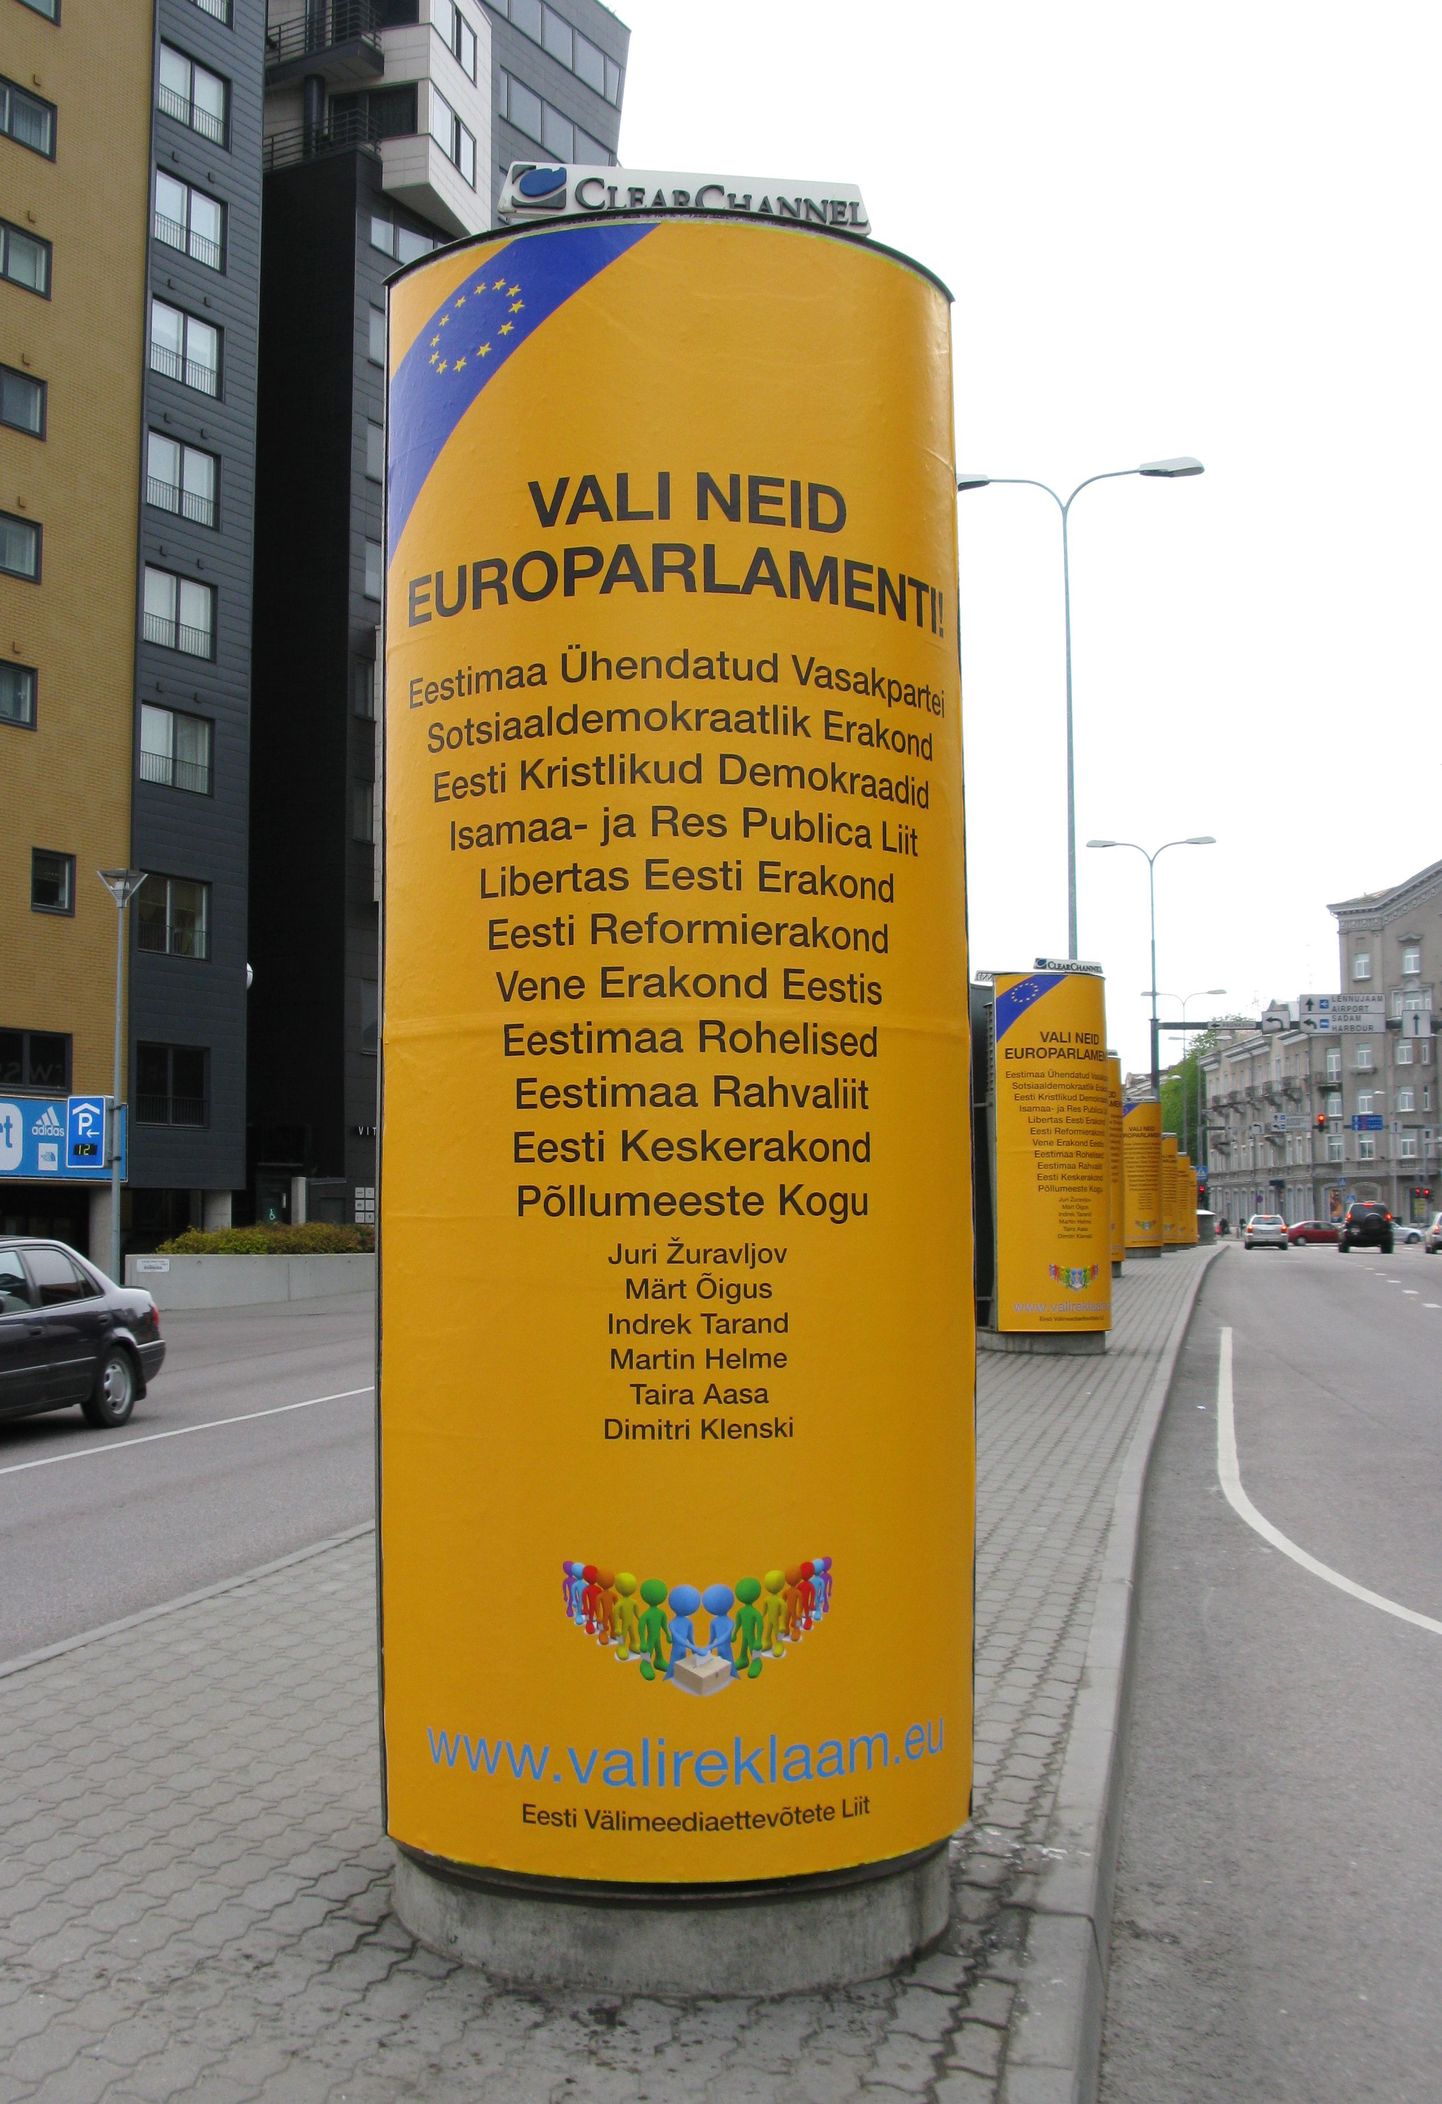 Eesti Välimeediaettevõtete Liit paigaldas tänavatele kollased valimisreklaamid, alustades nende abil kampaaniat poliitilise välireklaami keelu tühistamiseks.